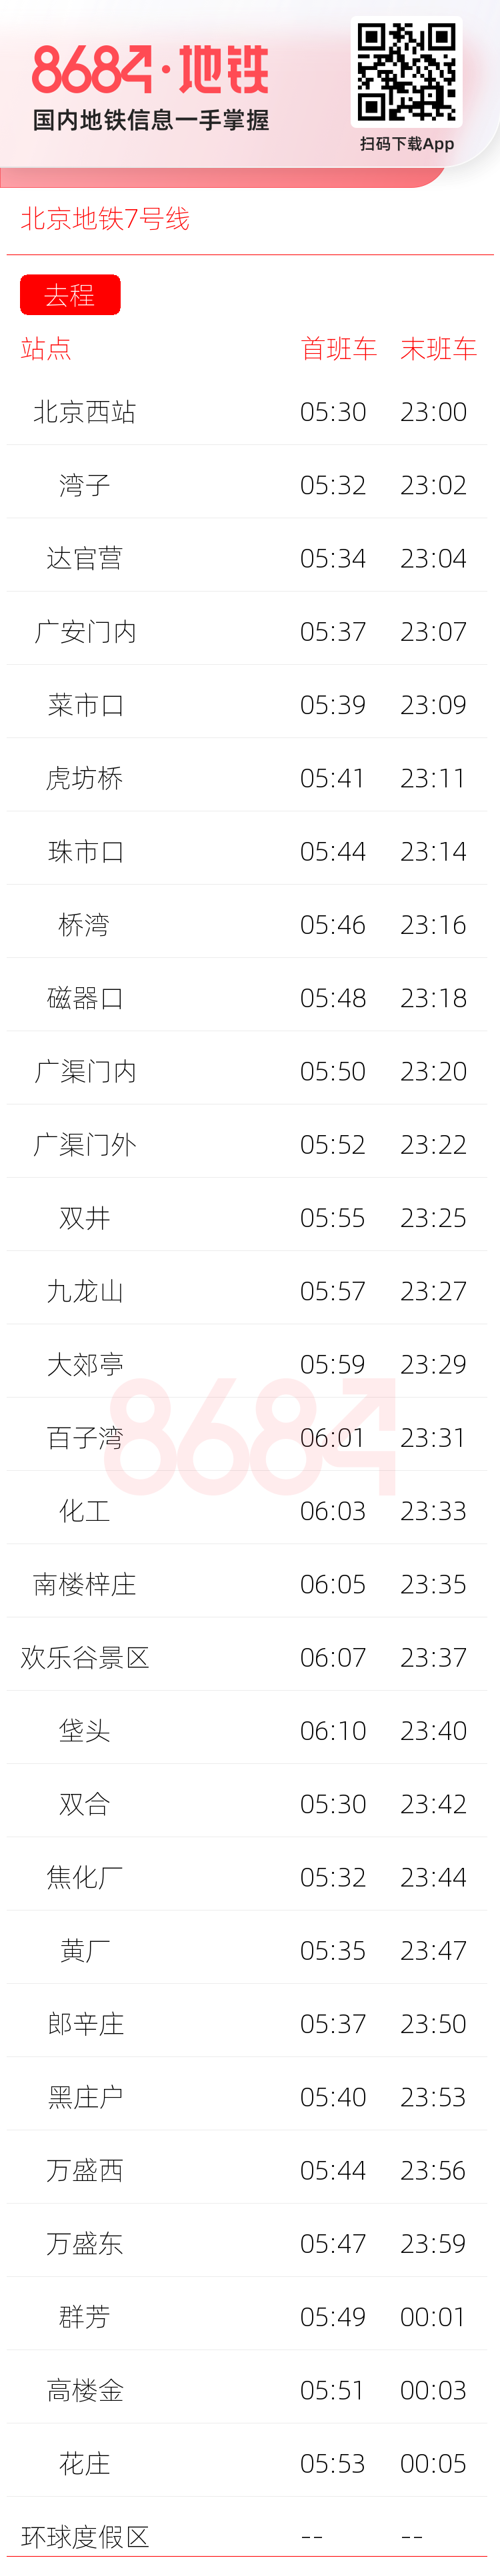 北京地铁7号线运营时间表